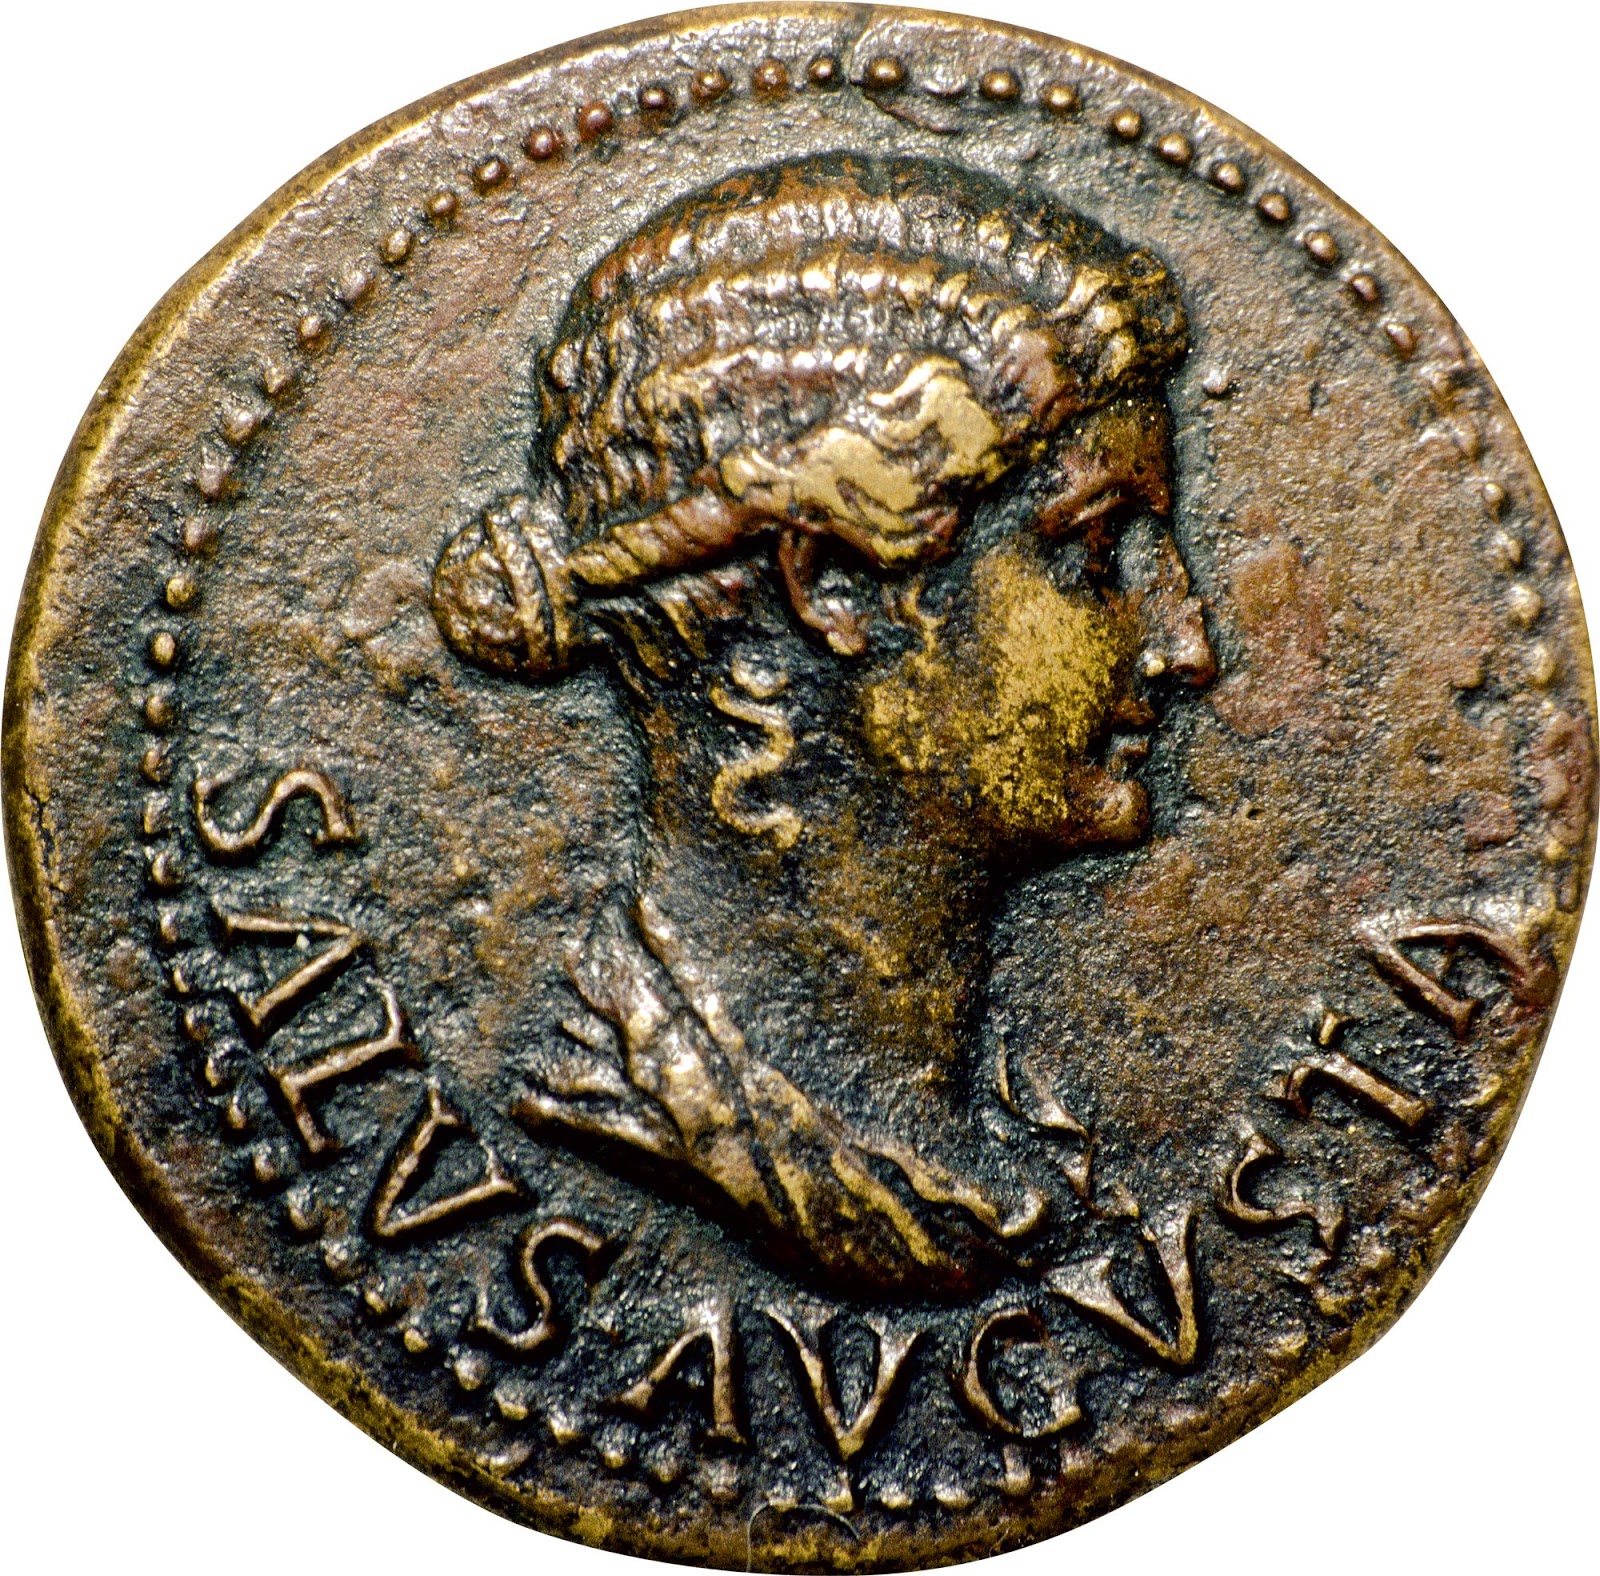  Efigie de Livia en una moneda. La importancia que Livia tuvo para Augusto queda reflejada en el hecho de que el emperador ordenara acuñar monedas con la efigie de su esposa.